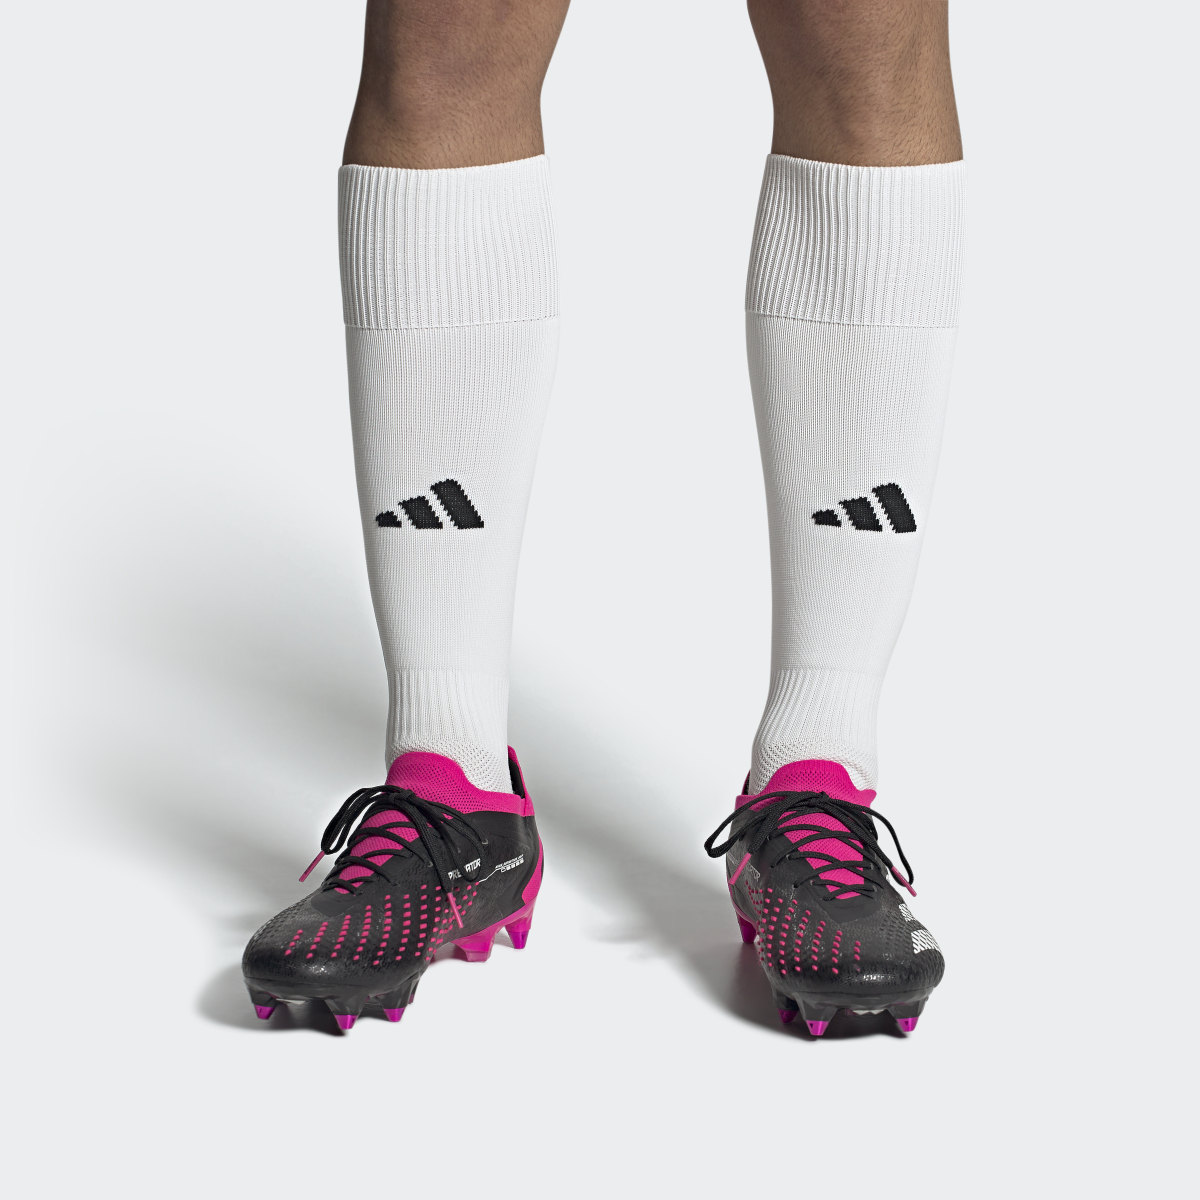 Adidas Scarpe da calcio Predator Accuracy.1 Low Soft Ground. 5